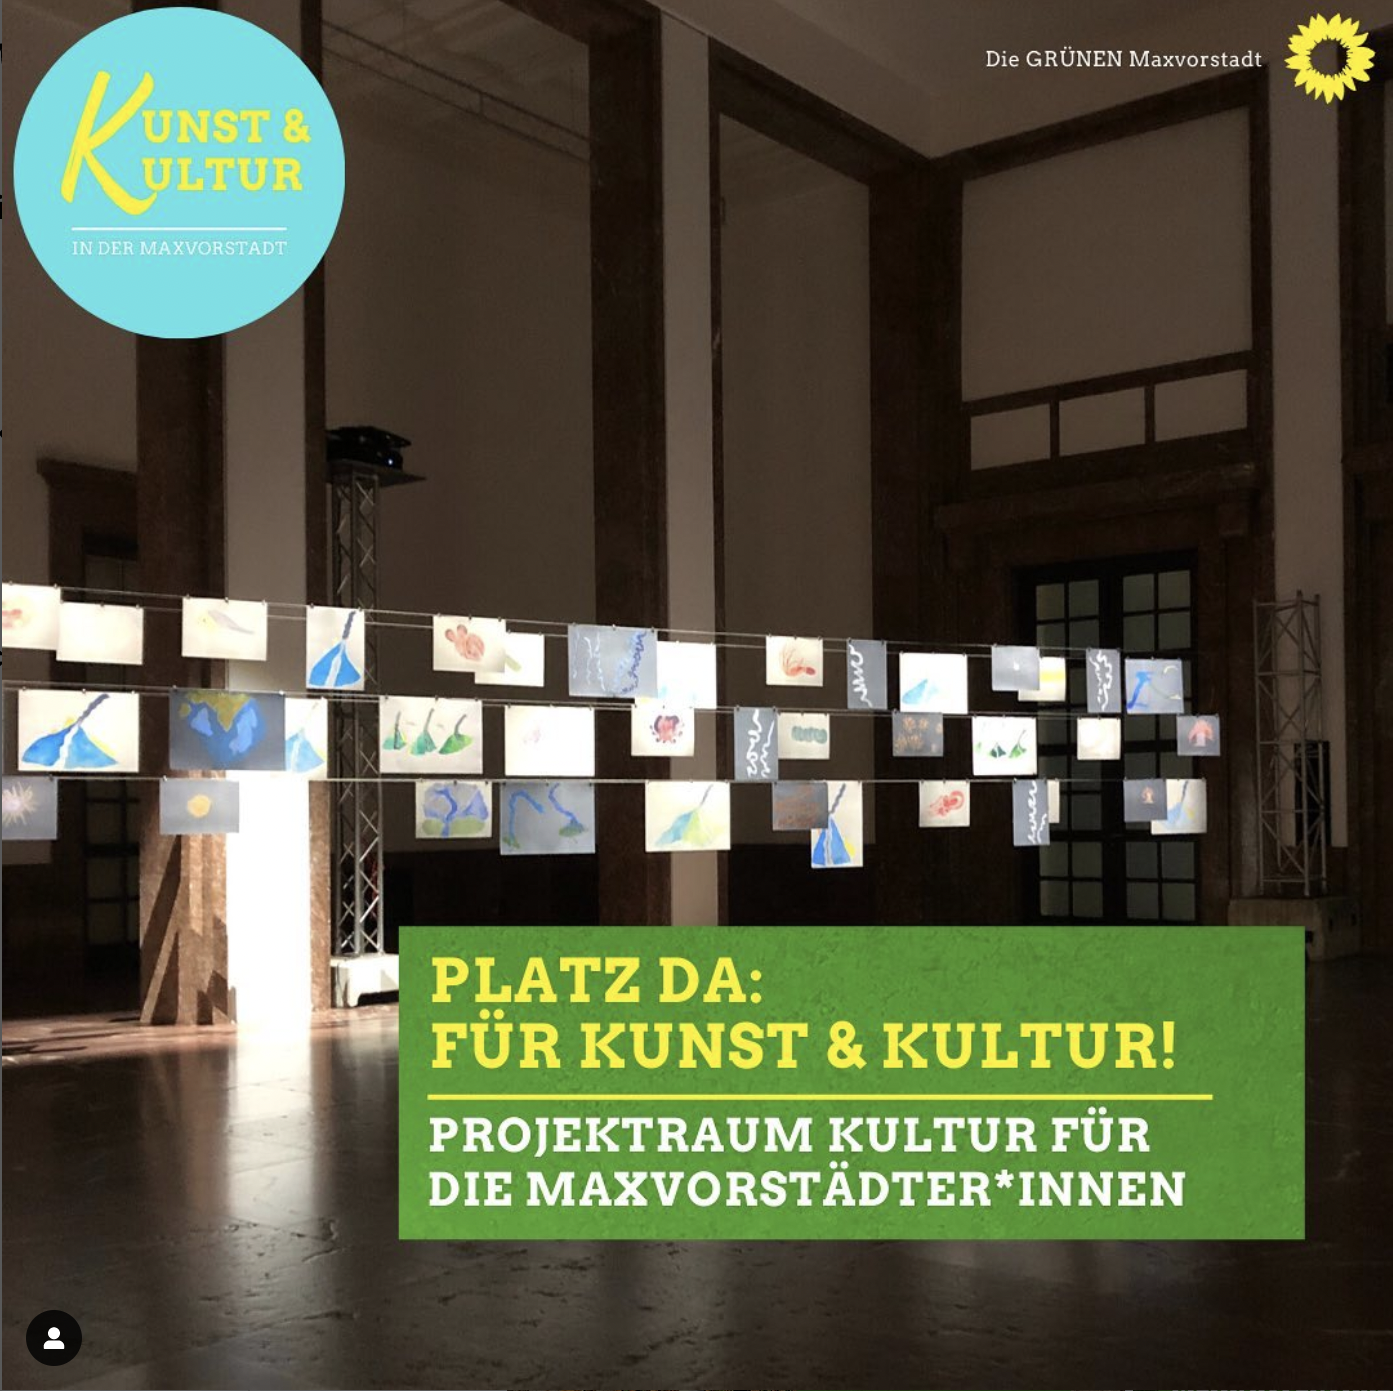 Ein Kulturprojektraum für die Maxvorstadt – Freie Szene und etablierte Einrichtungen vernetzen